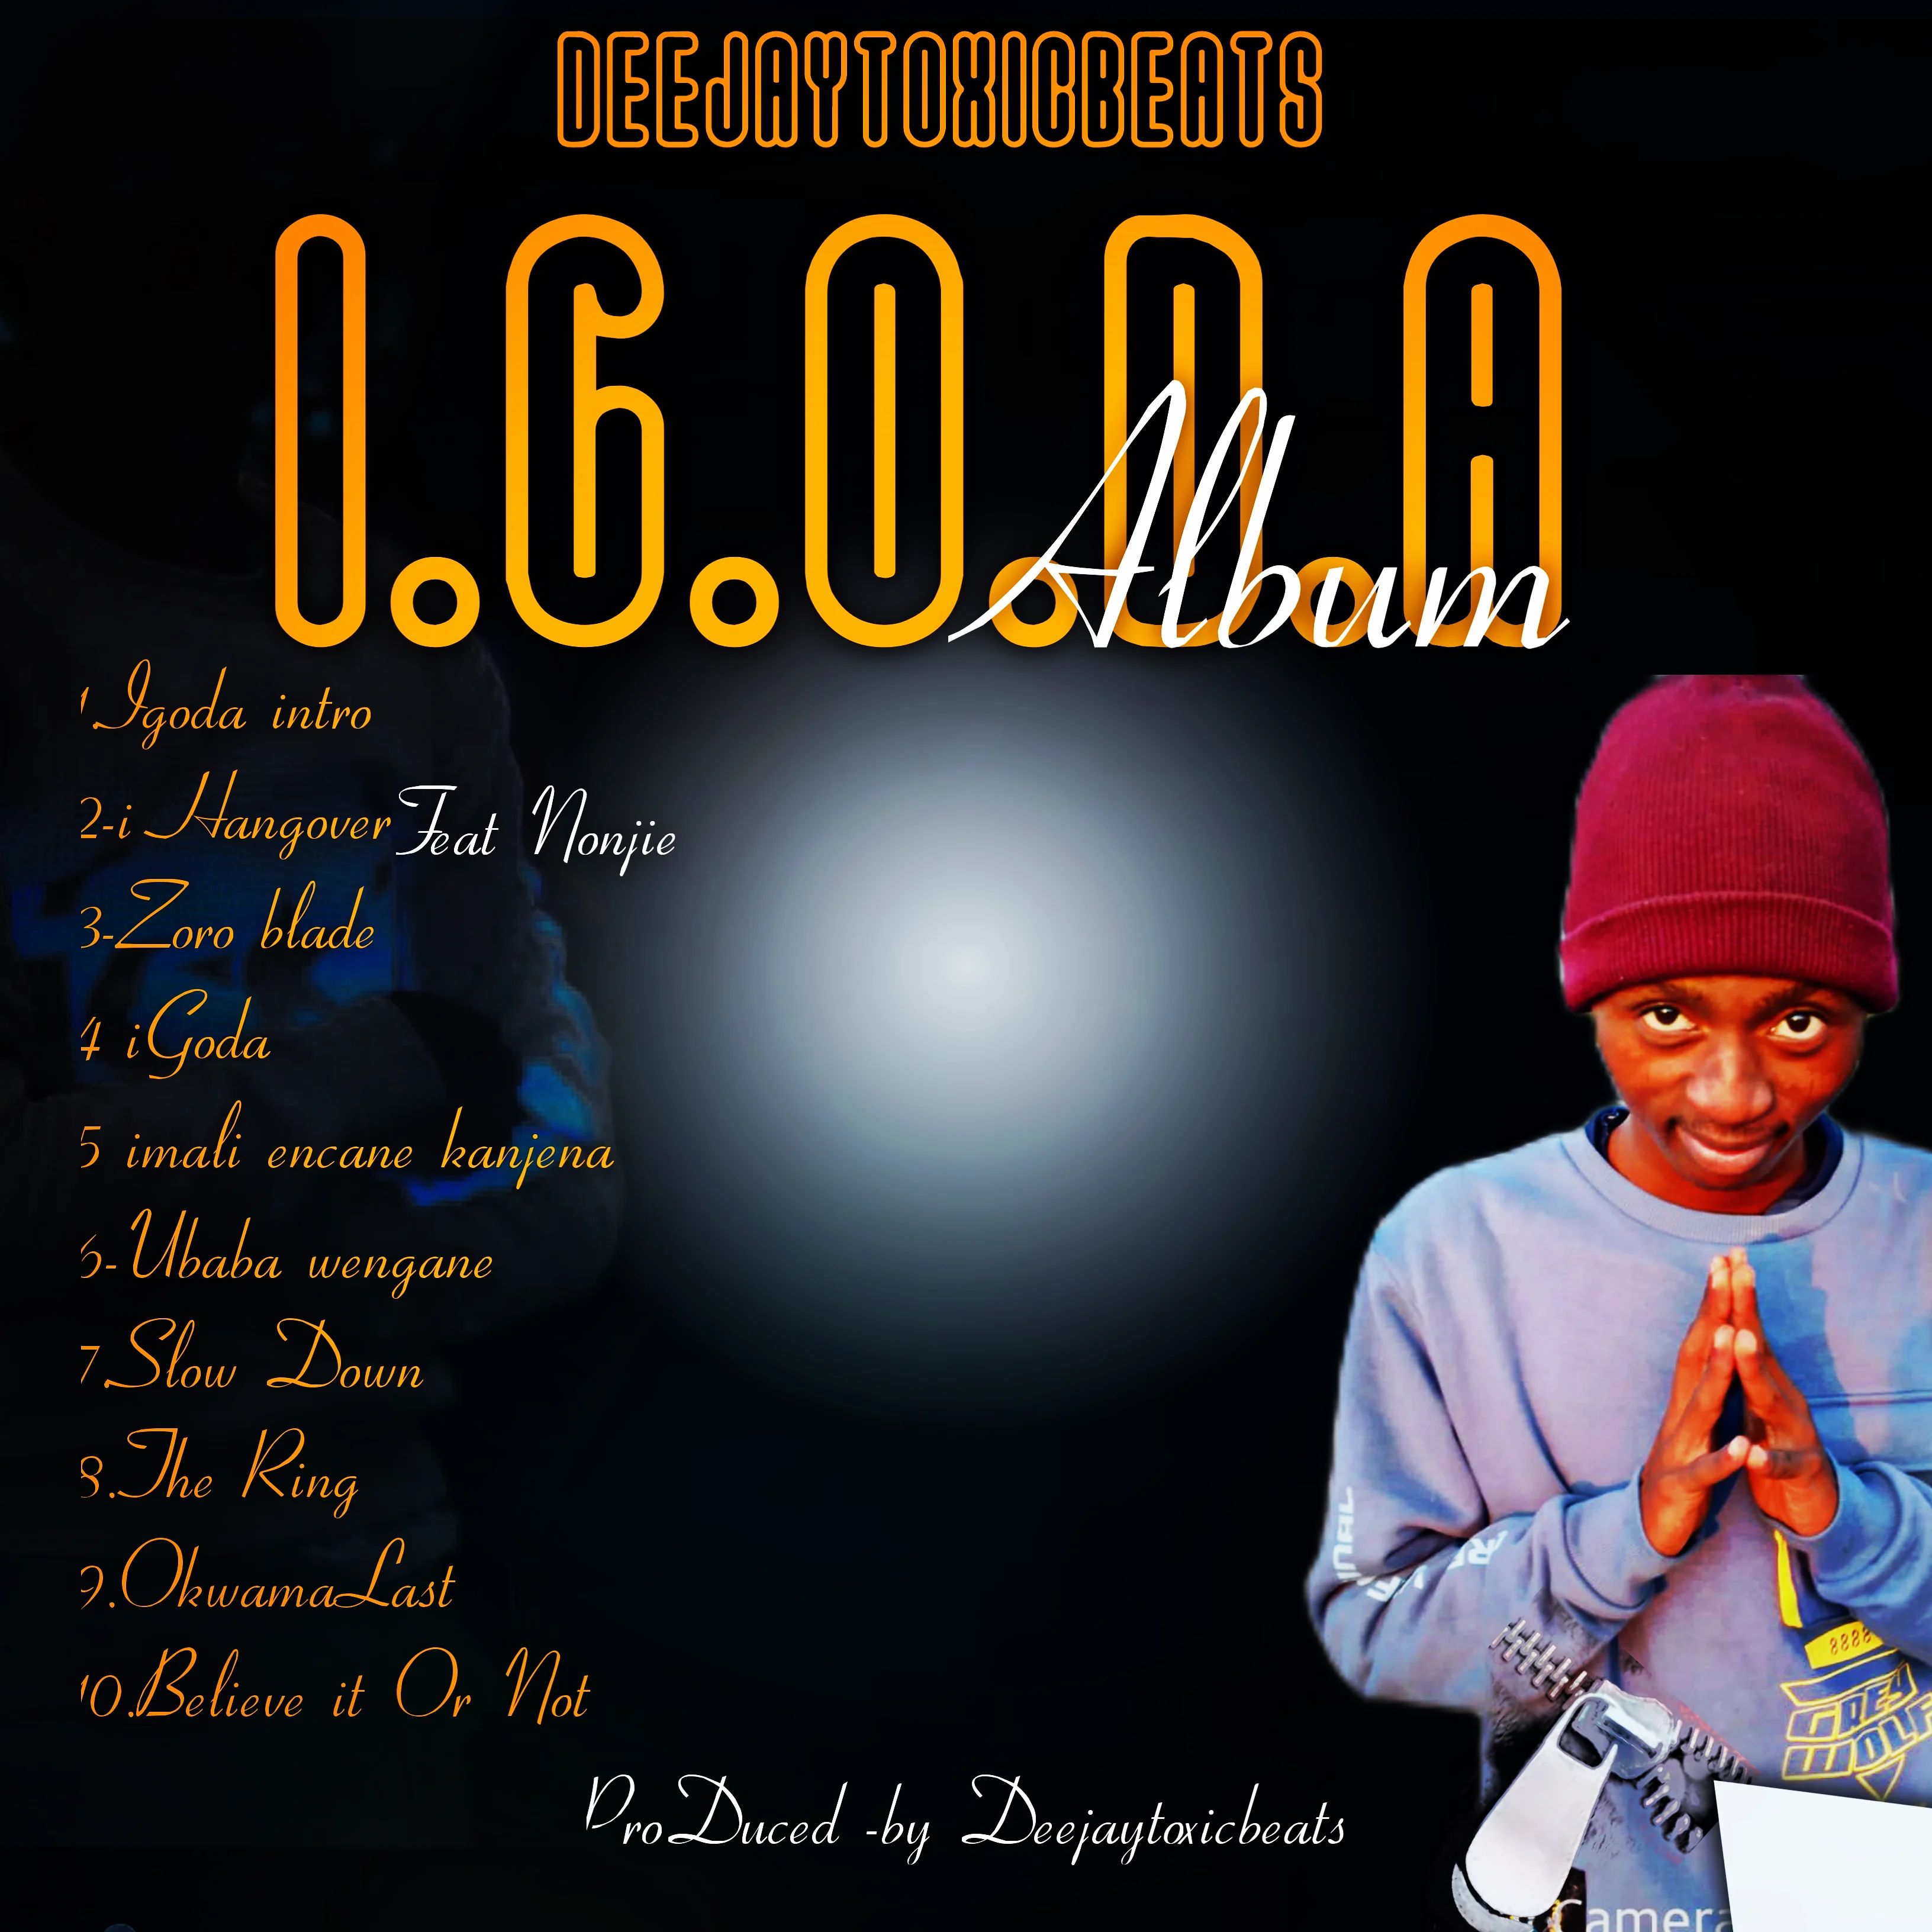 IGoda Album - Deejaytoxicbeats